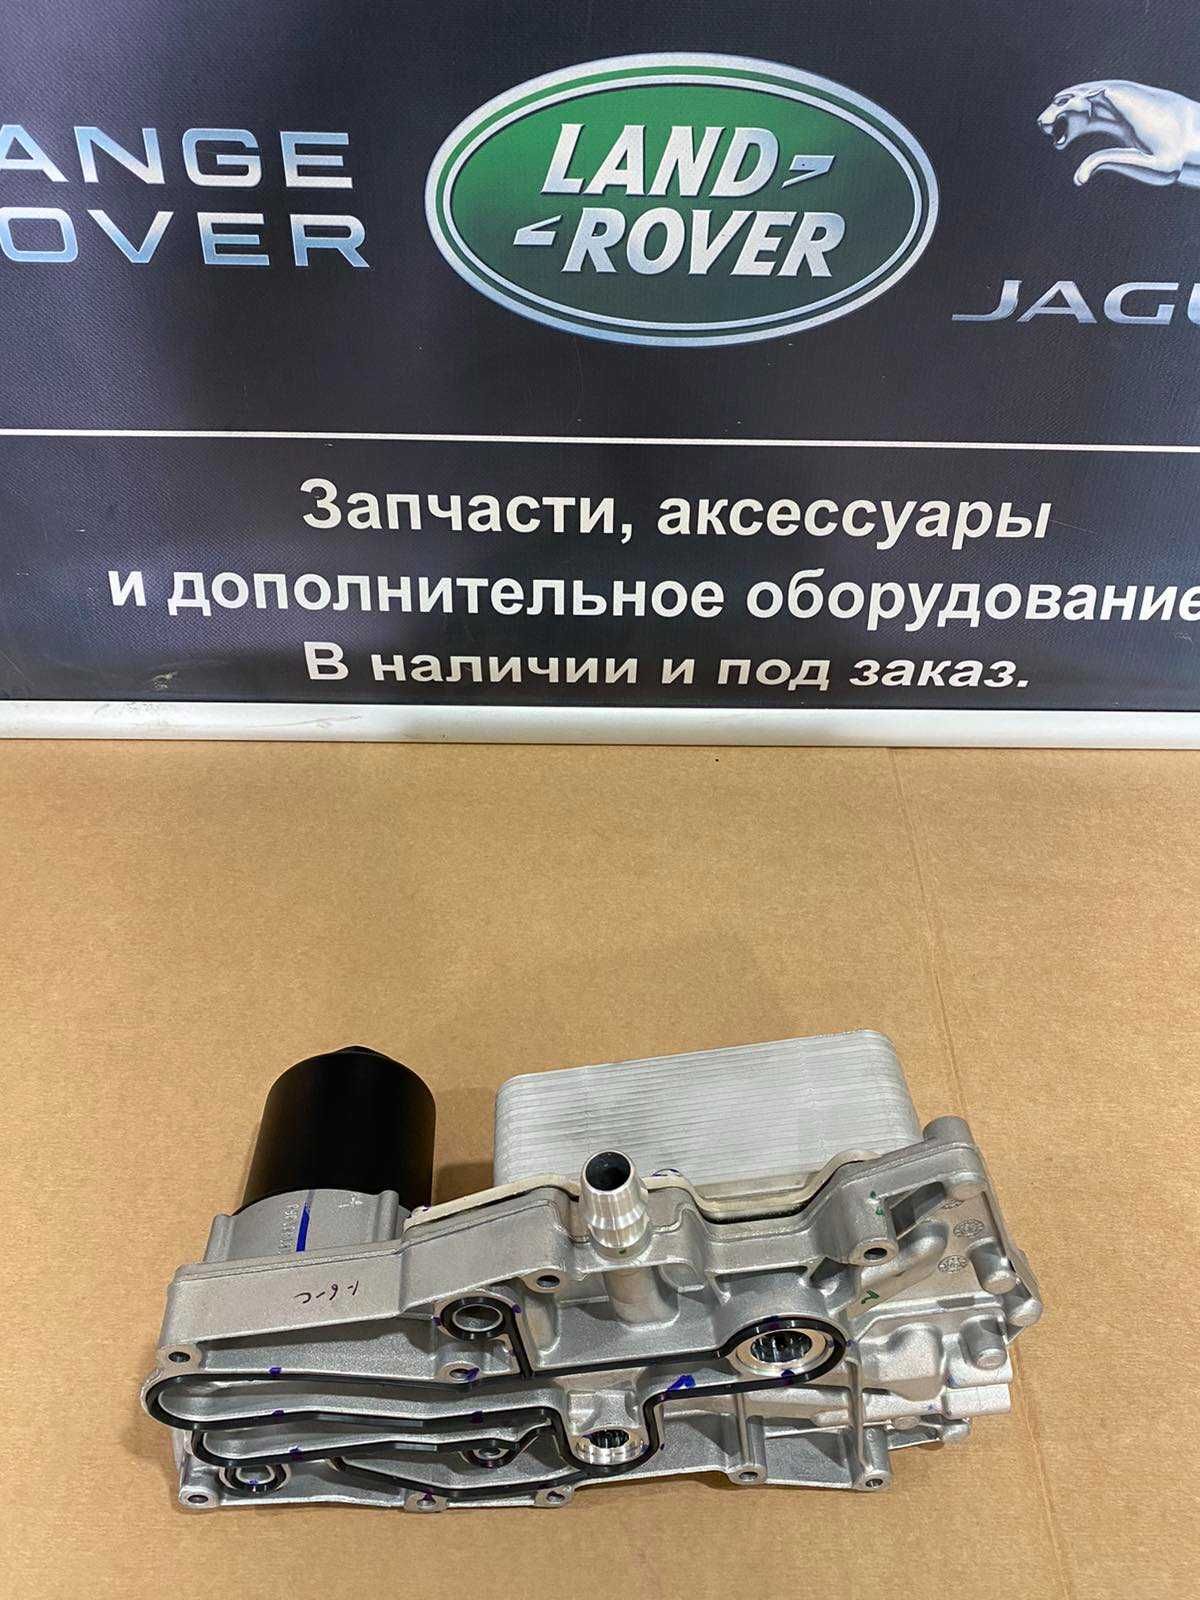 Масляный охладитель радиатор масла двигателя Ренж Ровер Вог 4,4 дизель